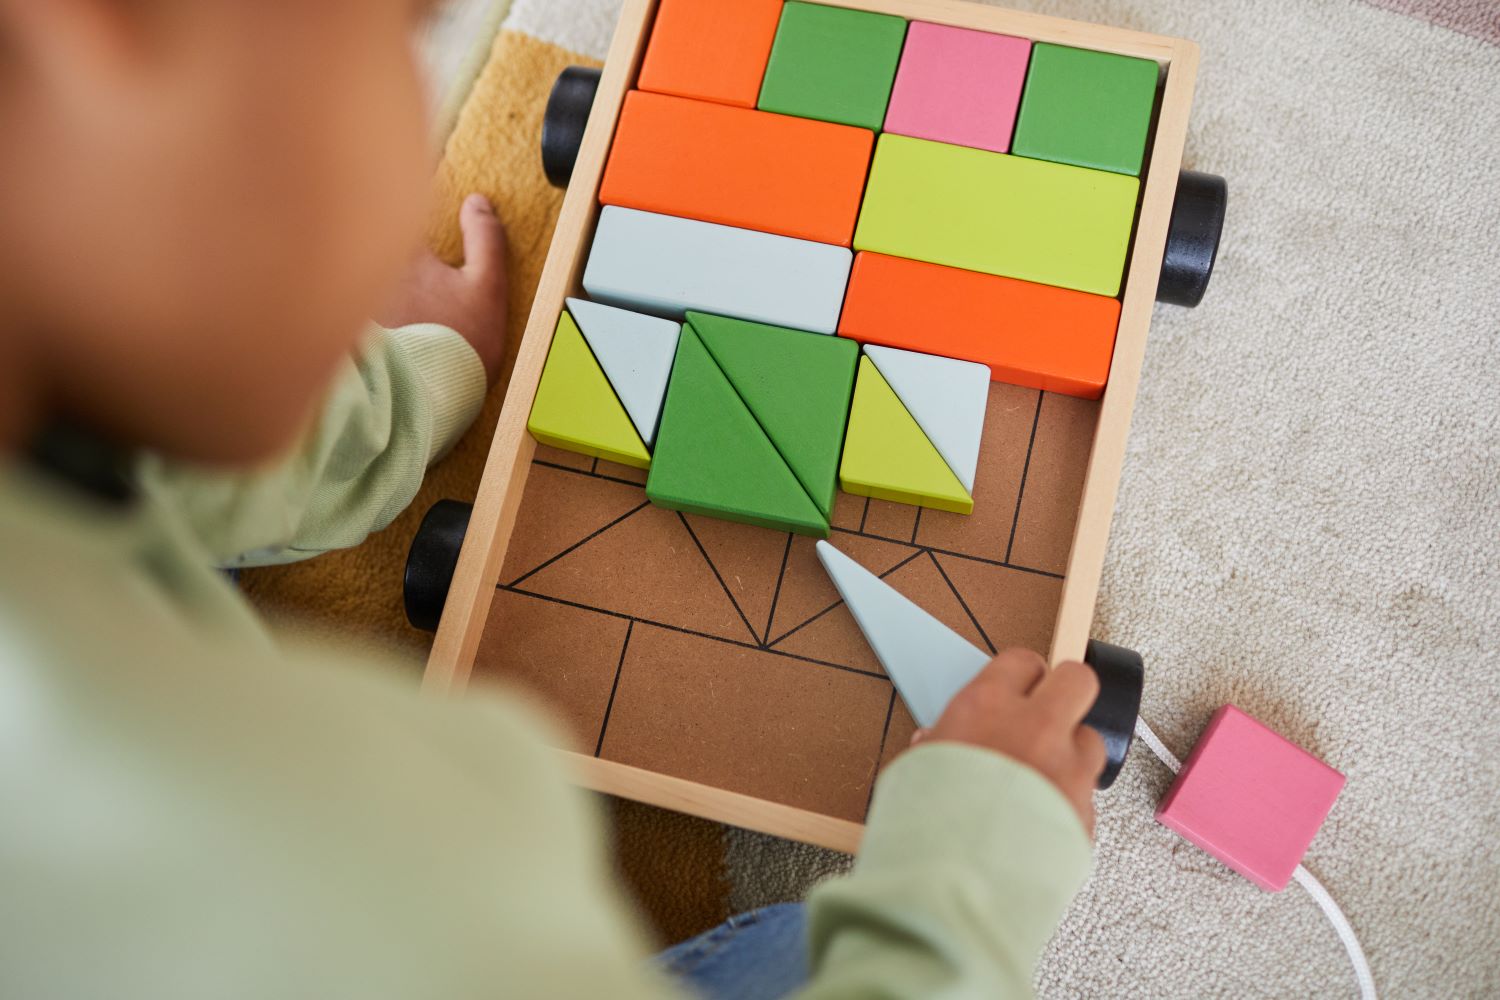 5 สาเหตุที่คุณควรเลือกของเล่นไม้สำหรับเด็ก: สร้างความฉลาดและพัฒนาการ